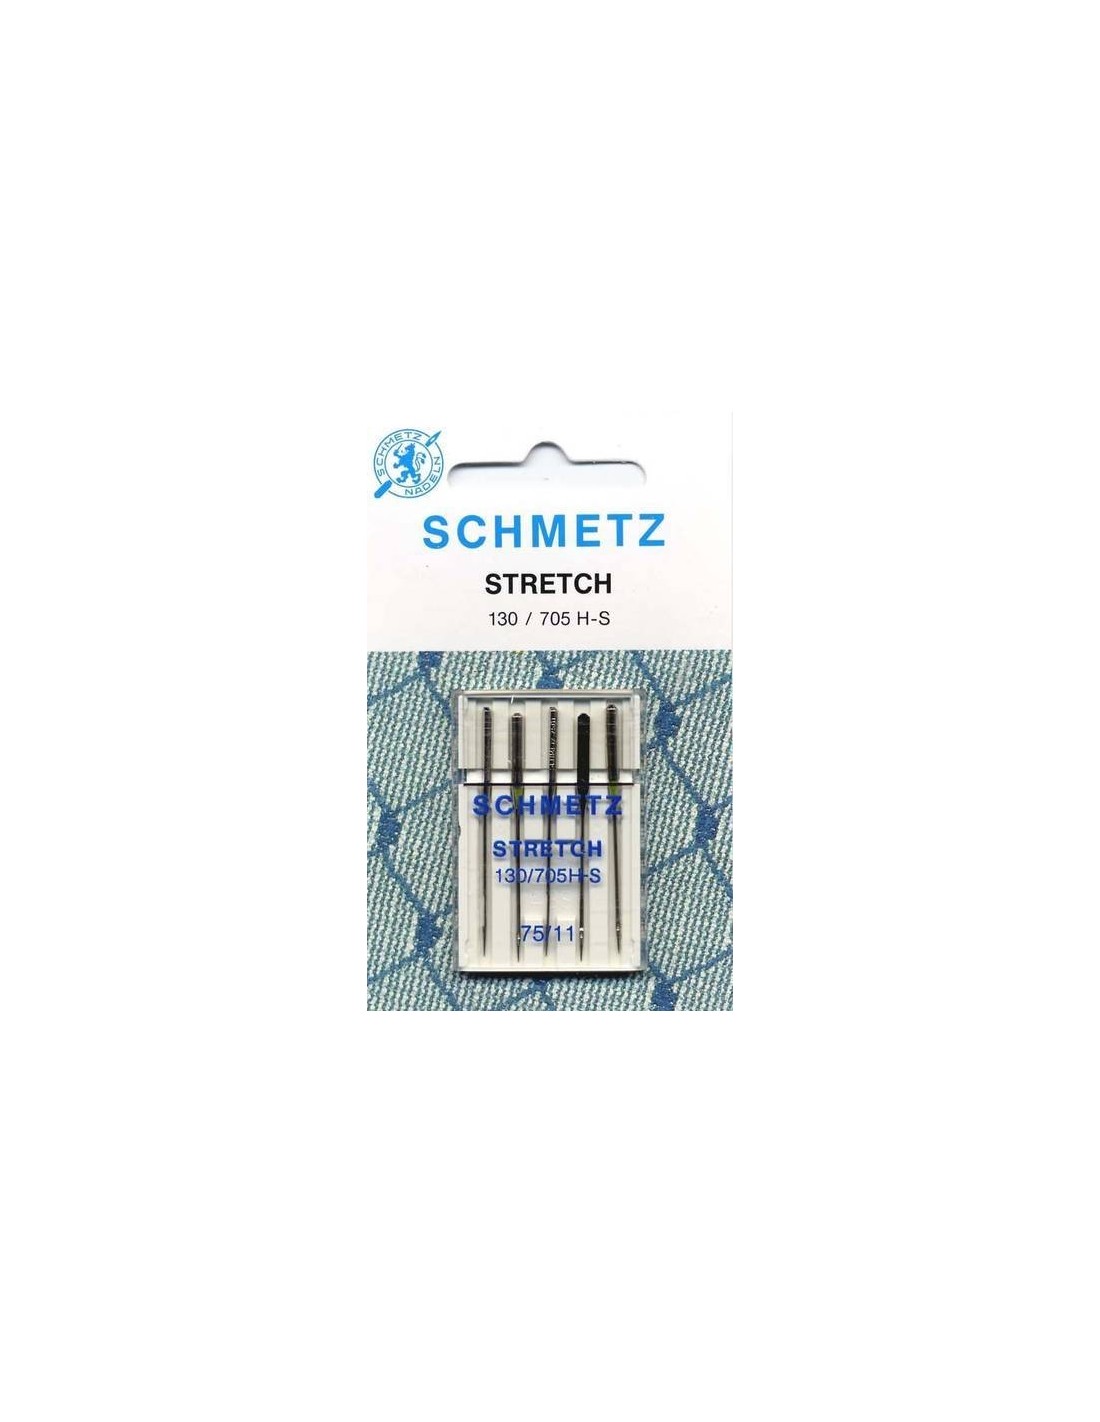 Aghi universali 130/705 H Schmetz misura 90/14 per macchina da cucire domestica